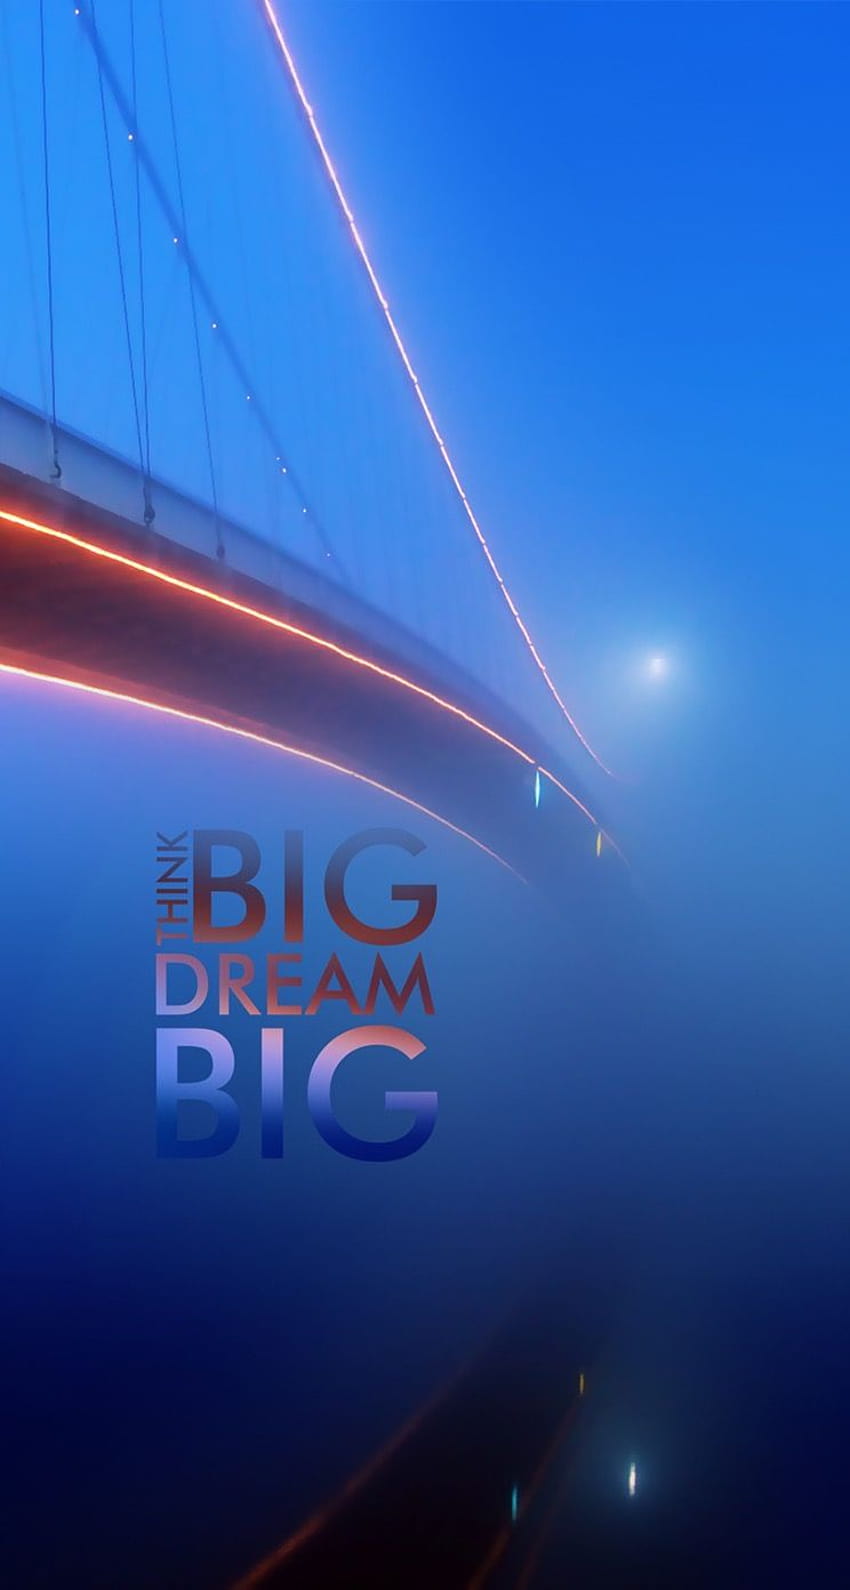 탭하여 앱을 받으세요! 인용구 City Blue Bridge Mist Shining Bright Think Big Dream iPhone 5 HD 전화 배경 화면